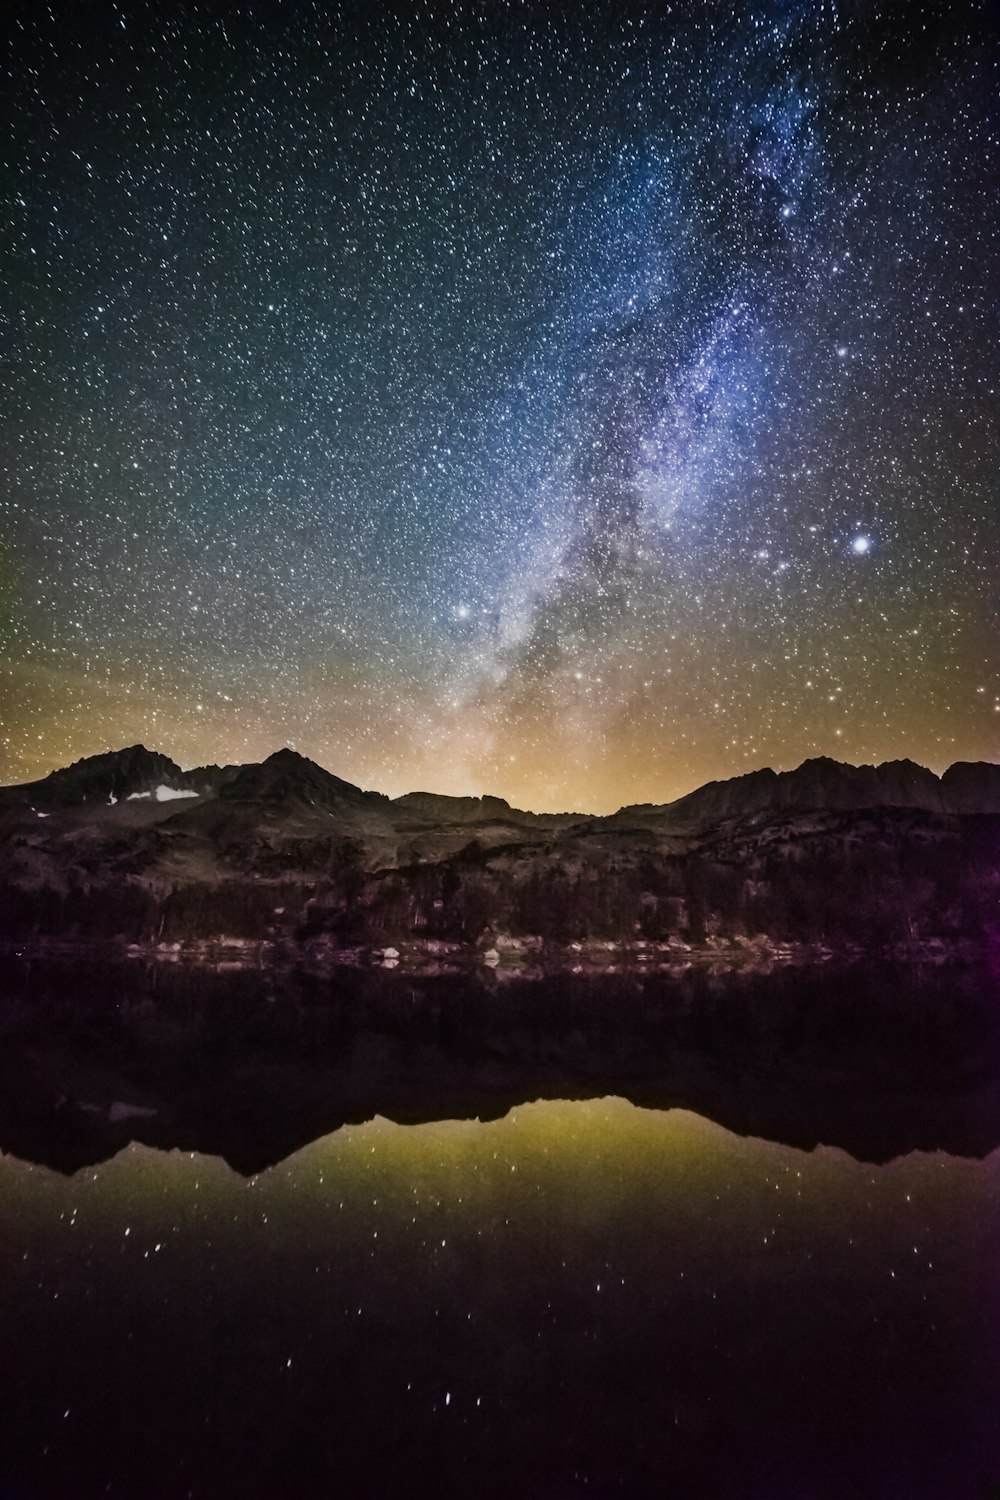 cielo estrellado de la noche sobre la montaña por el lago cristalino